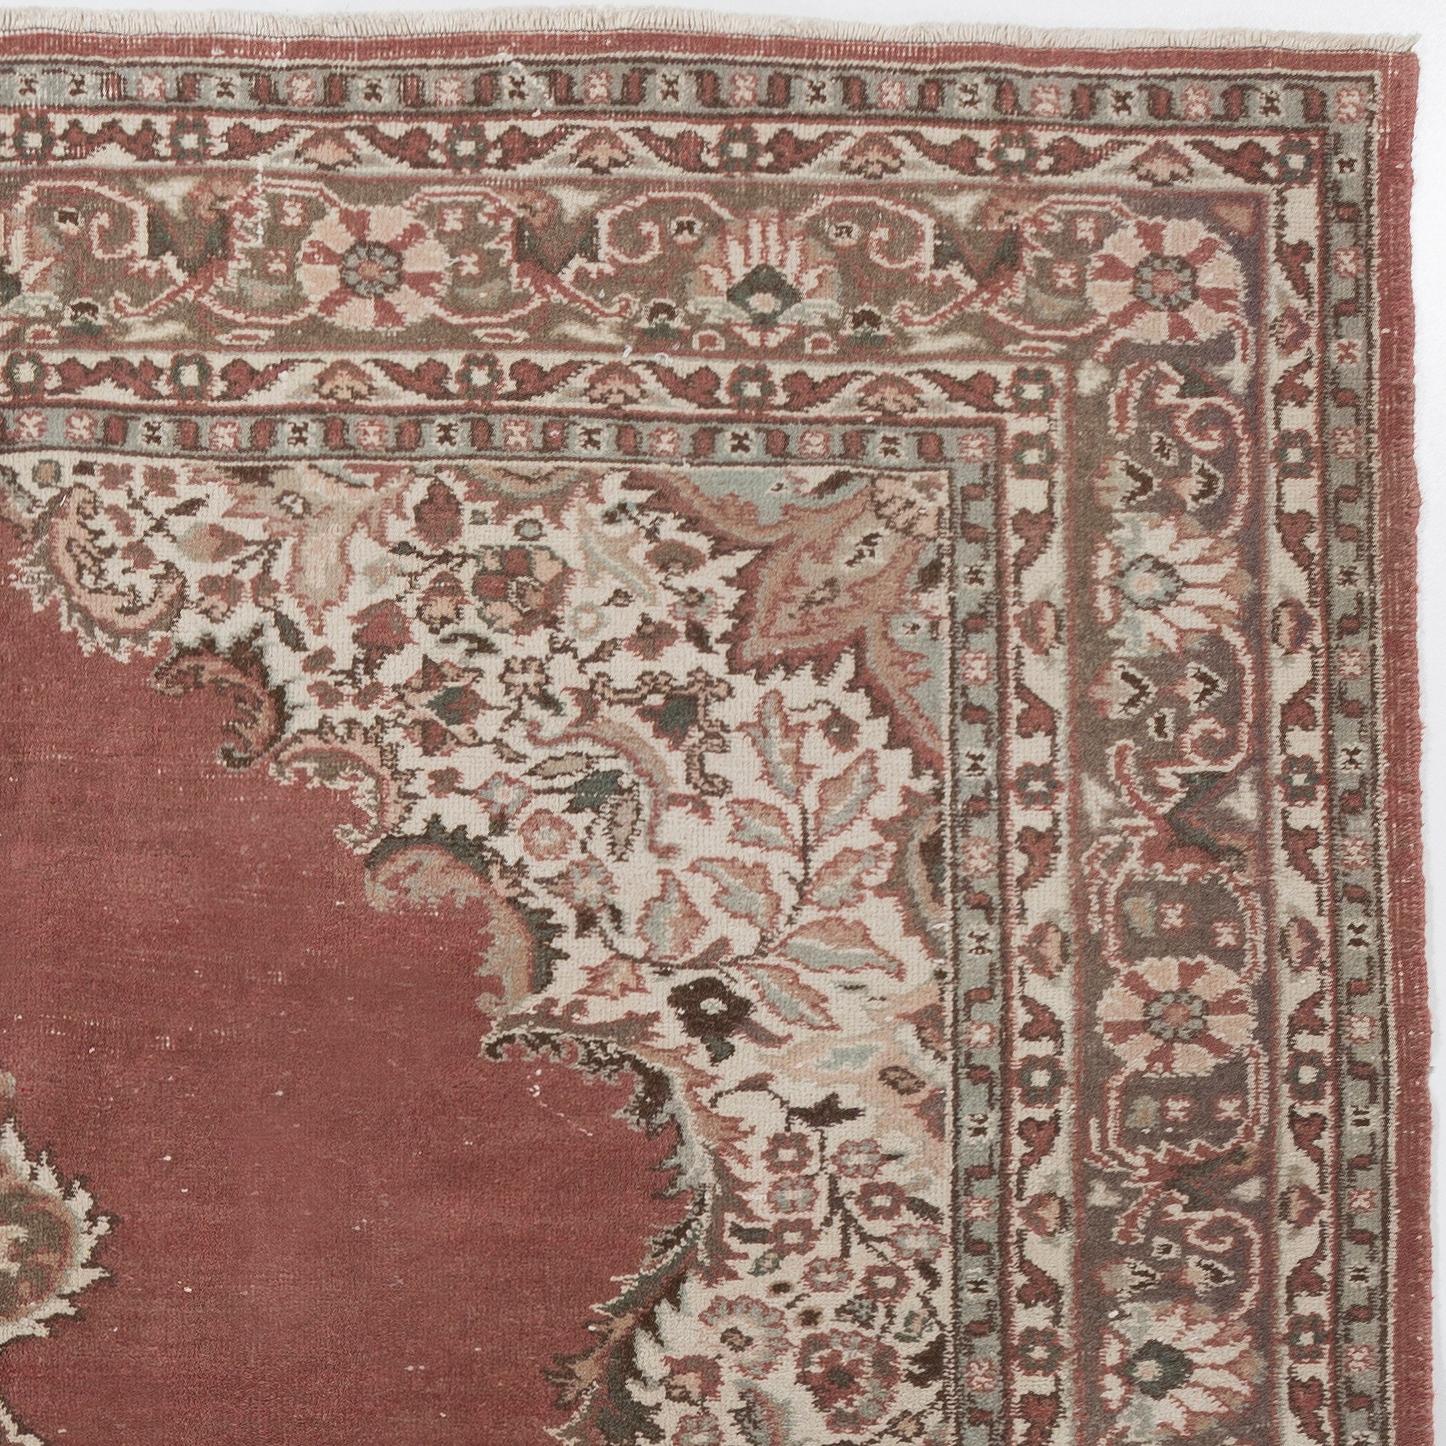 Ce tapis turc vintage finement noué à la main date des années 1960 et présente un motif de médaillon. Le tapis a même des poils bas en laine sur une base en coton. Il est lourd et repose à plat sur le sol, en très bon état et sans problème. Il a été